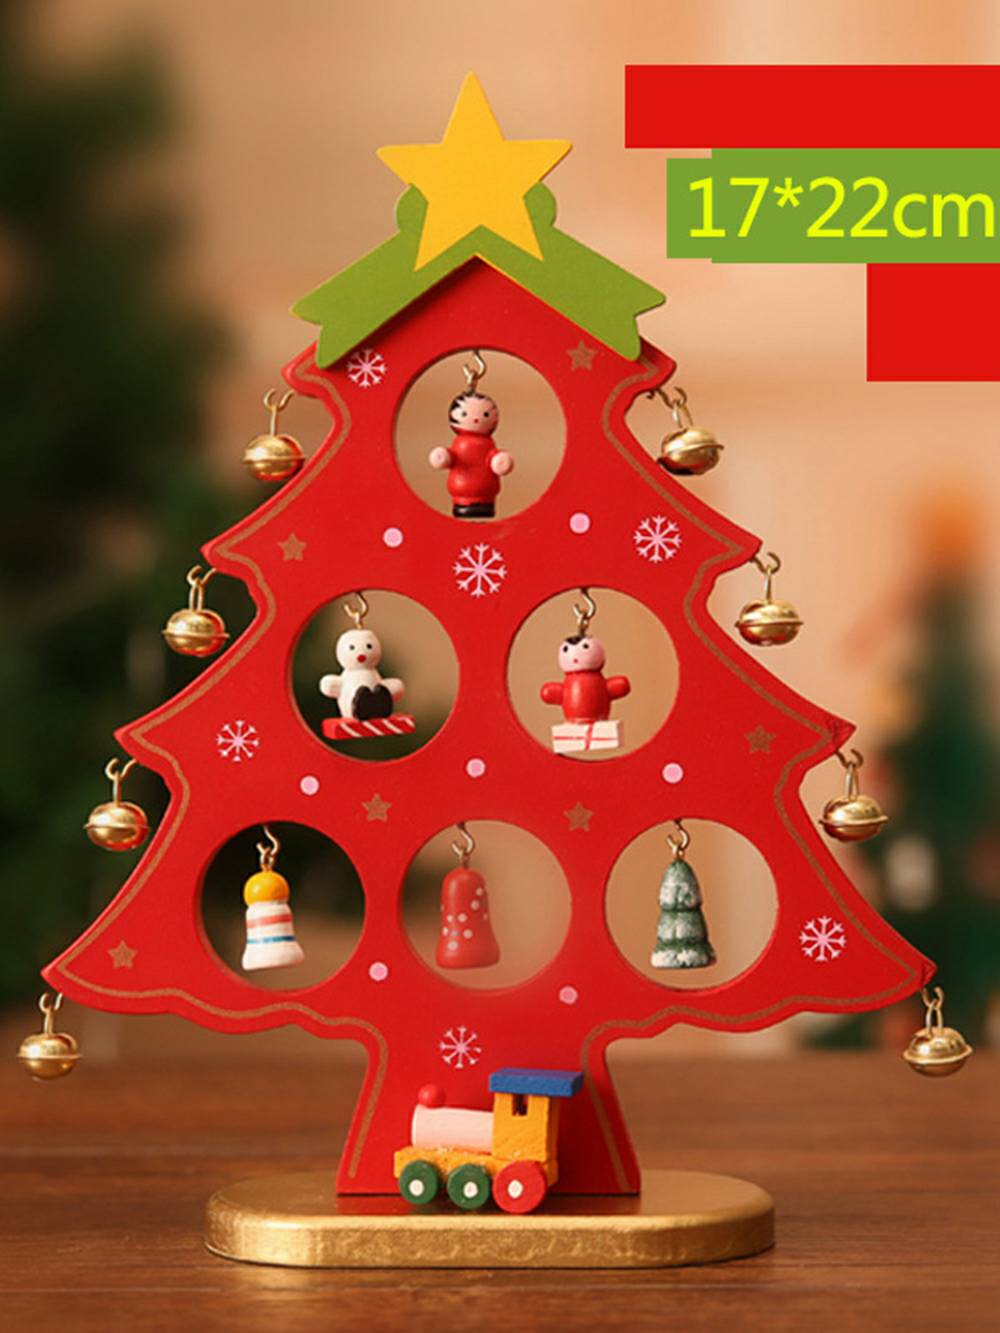 Bezaubernder 3D-Weihnachtsbaum aus Holz mit Schneemann-Glocken-Ornament